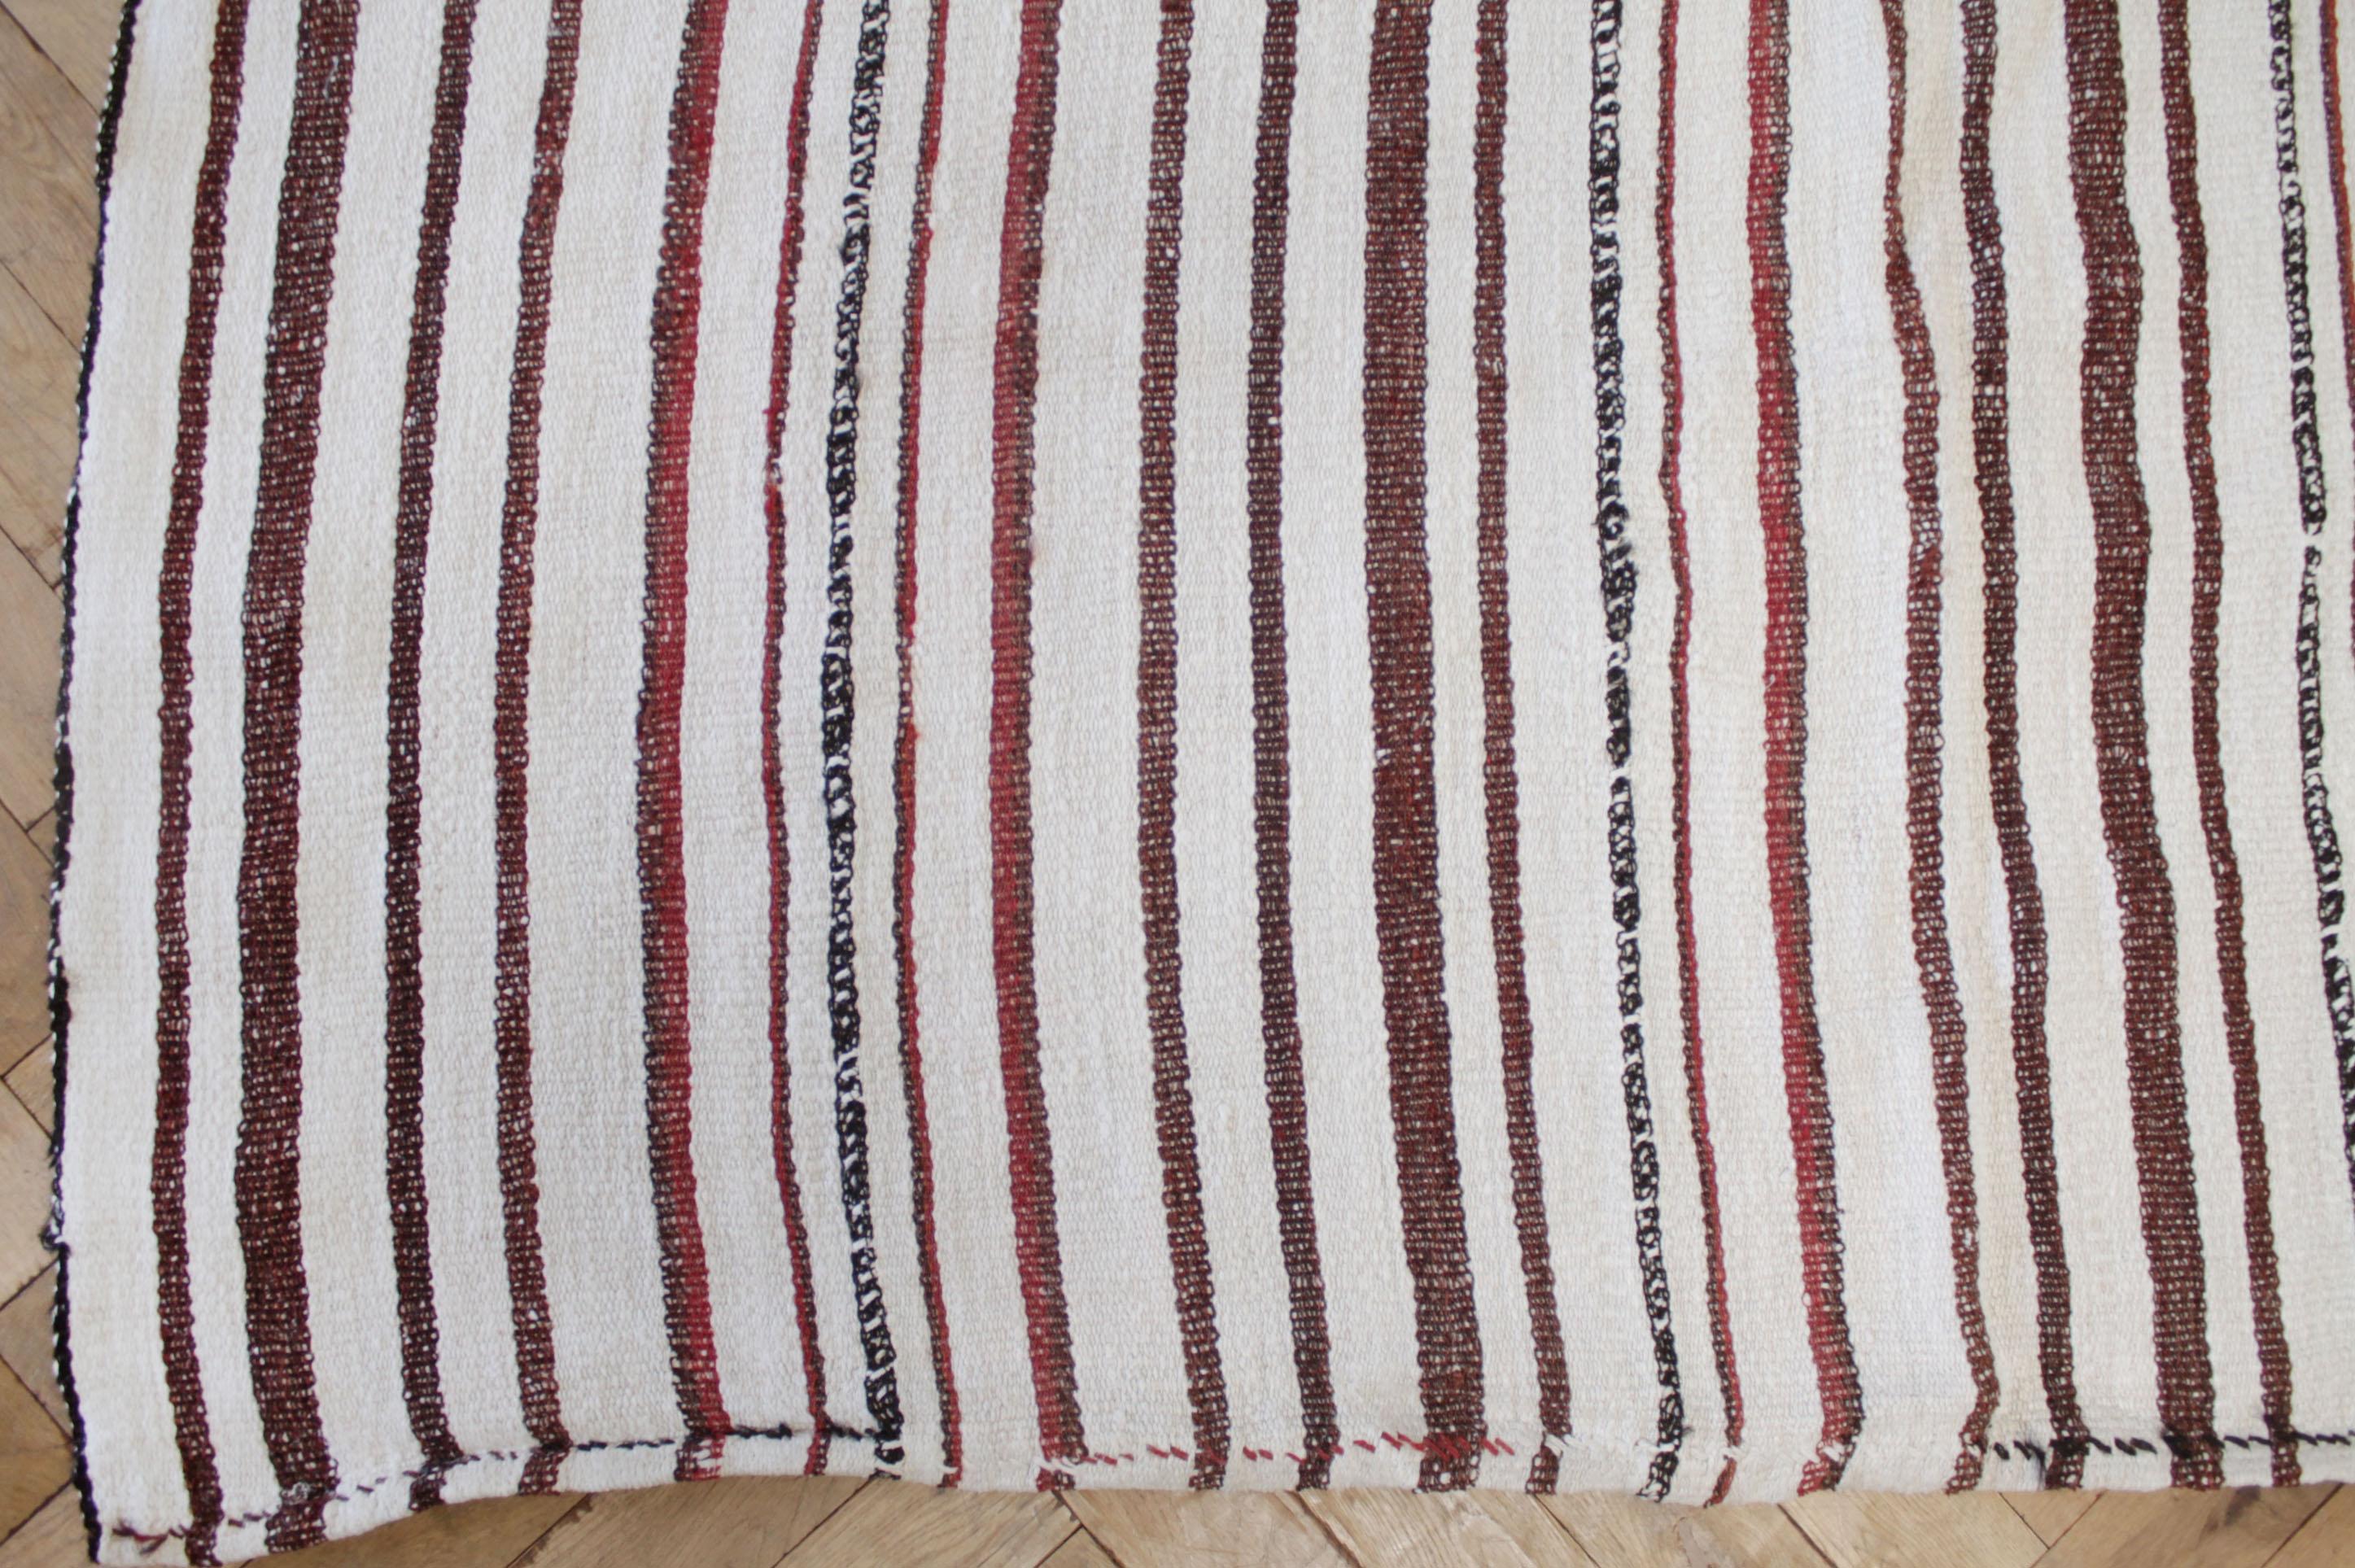 Karminroter Streifenteppich
Türkischer Vintage-Teppich in weißer Webart mit hellen bis dunklen ziegelfarbenen Streifen.
Unsere neueste Kollektion ist aus der Türkei eingetroffen. Sie eignen sich hervorragend als Teppich, oder Sie lassen sich von